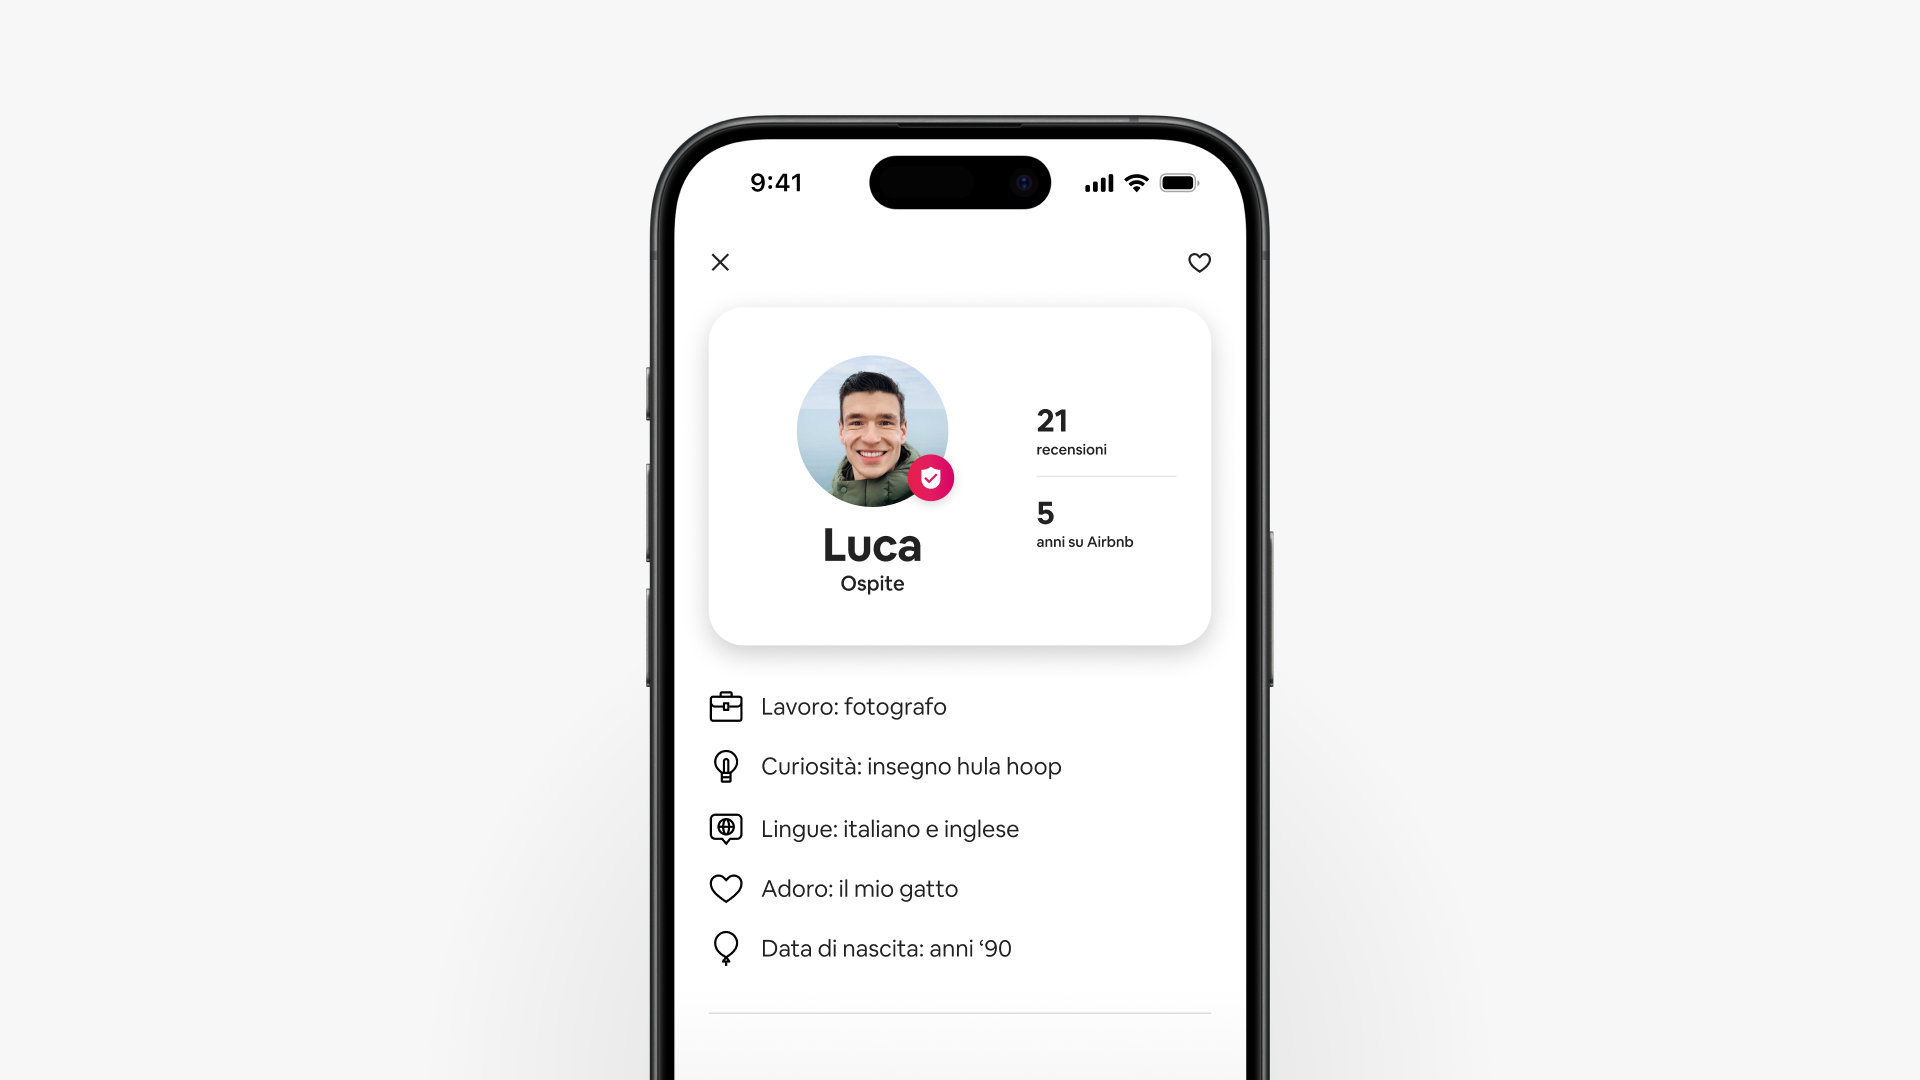 Una schermata di uno smartphone mostra il profilo aggiornato dell'ospite Luca su Airbnb, che include le recensioni e dettagli su questa persona.